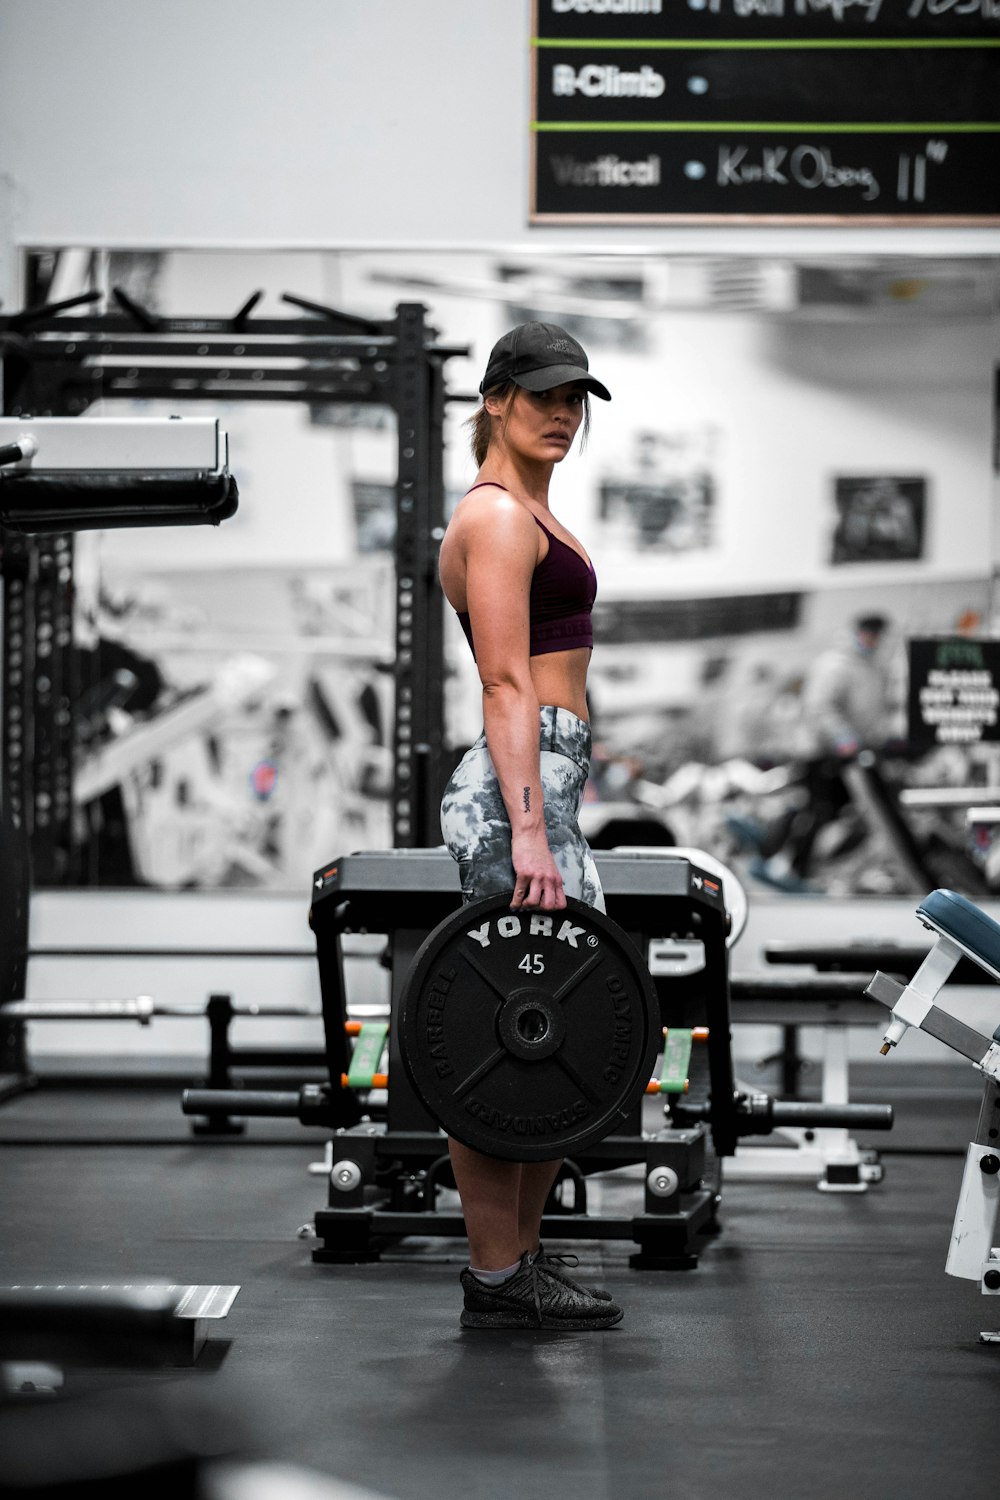 Frau in rotem Sport-BH und schwarz-grauen Shorts trainiert auf schwarzen Trainingsgeräten